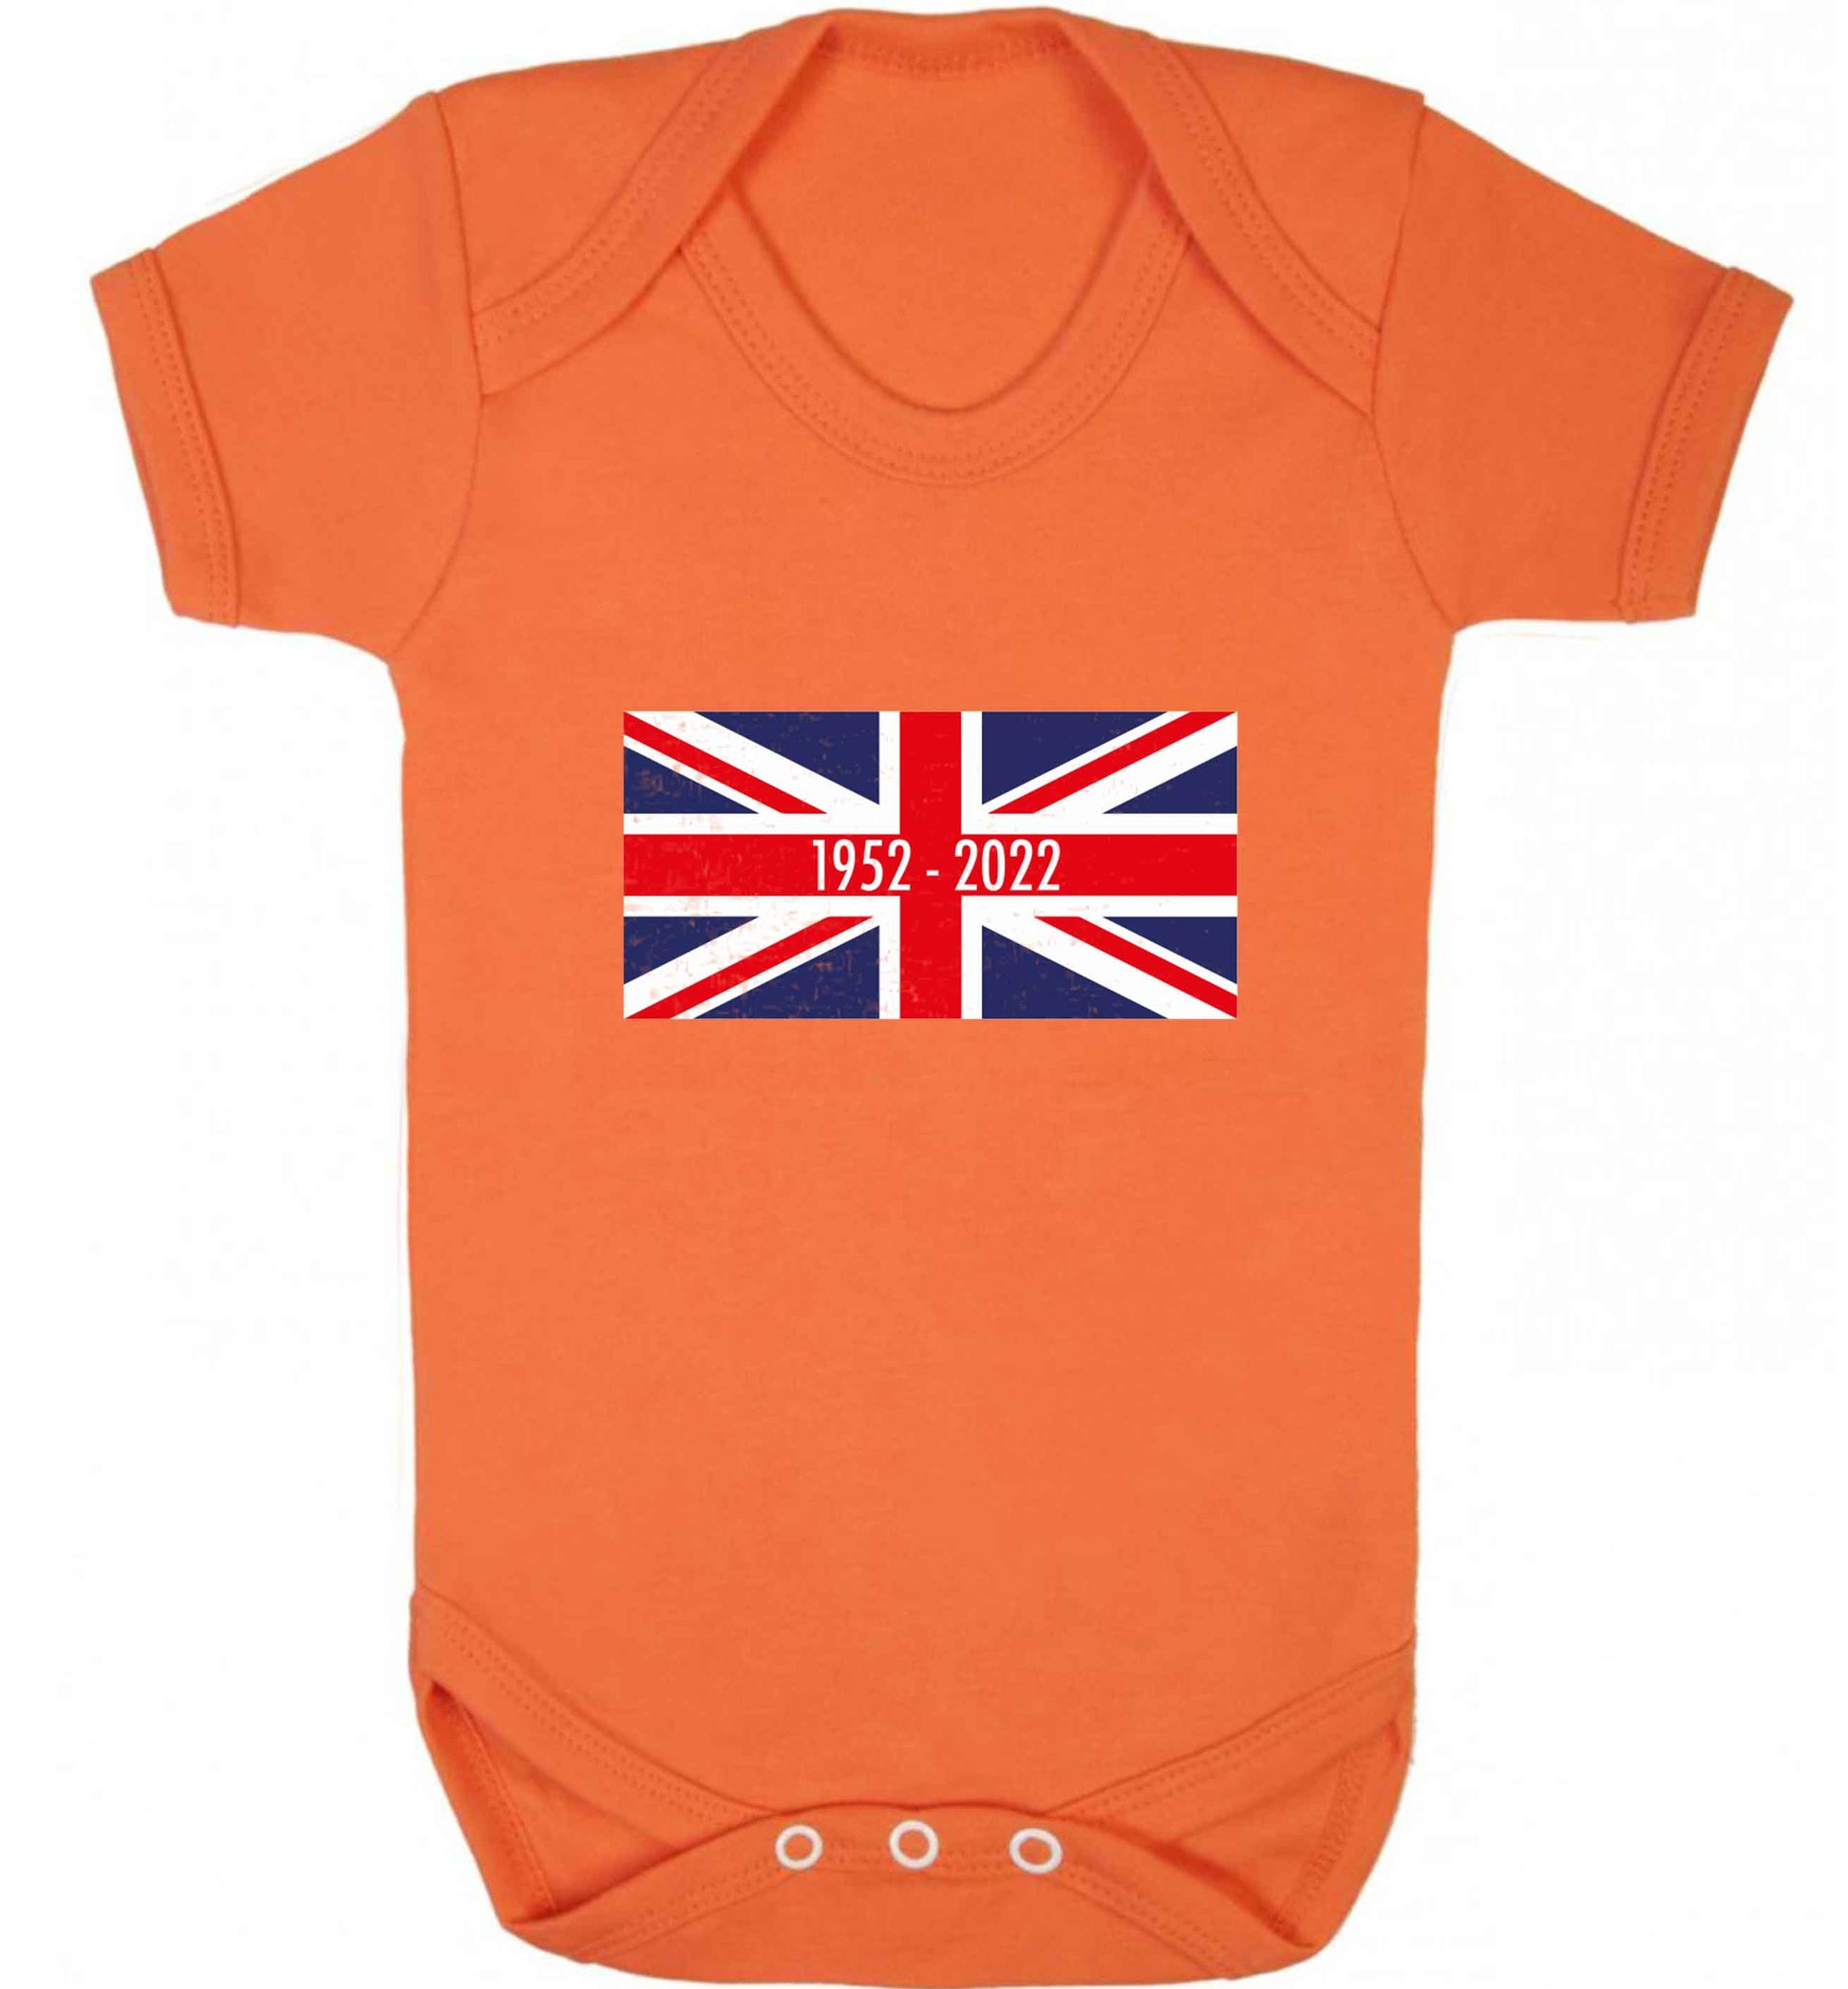 British flag Queens jubilee baby vest orange 18-24 months